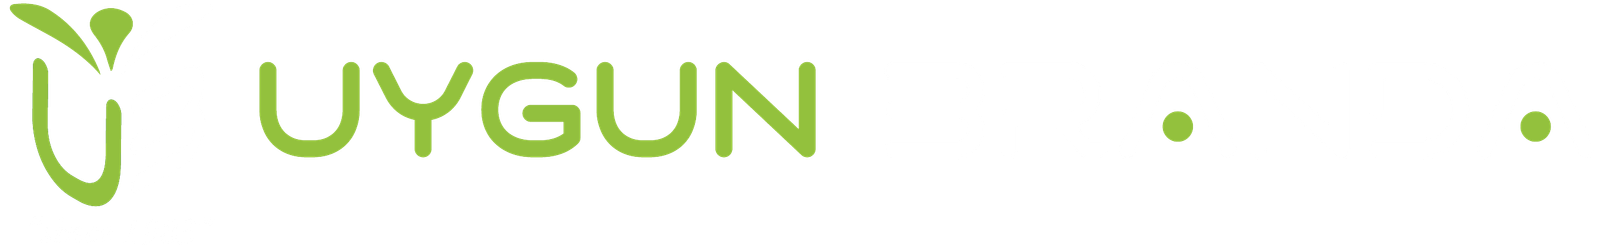 Uygun Branda Logo